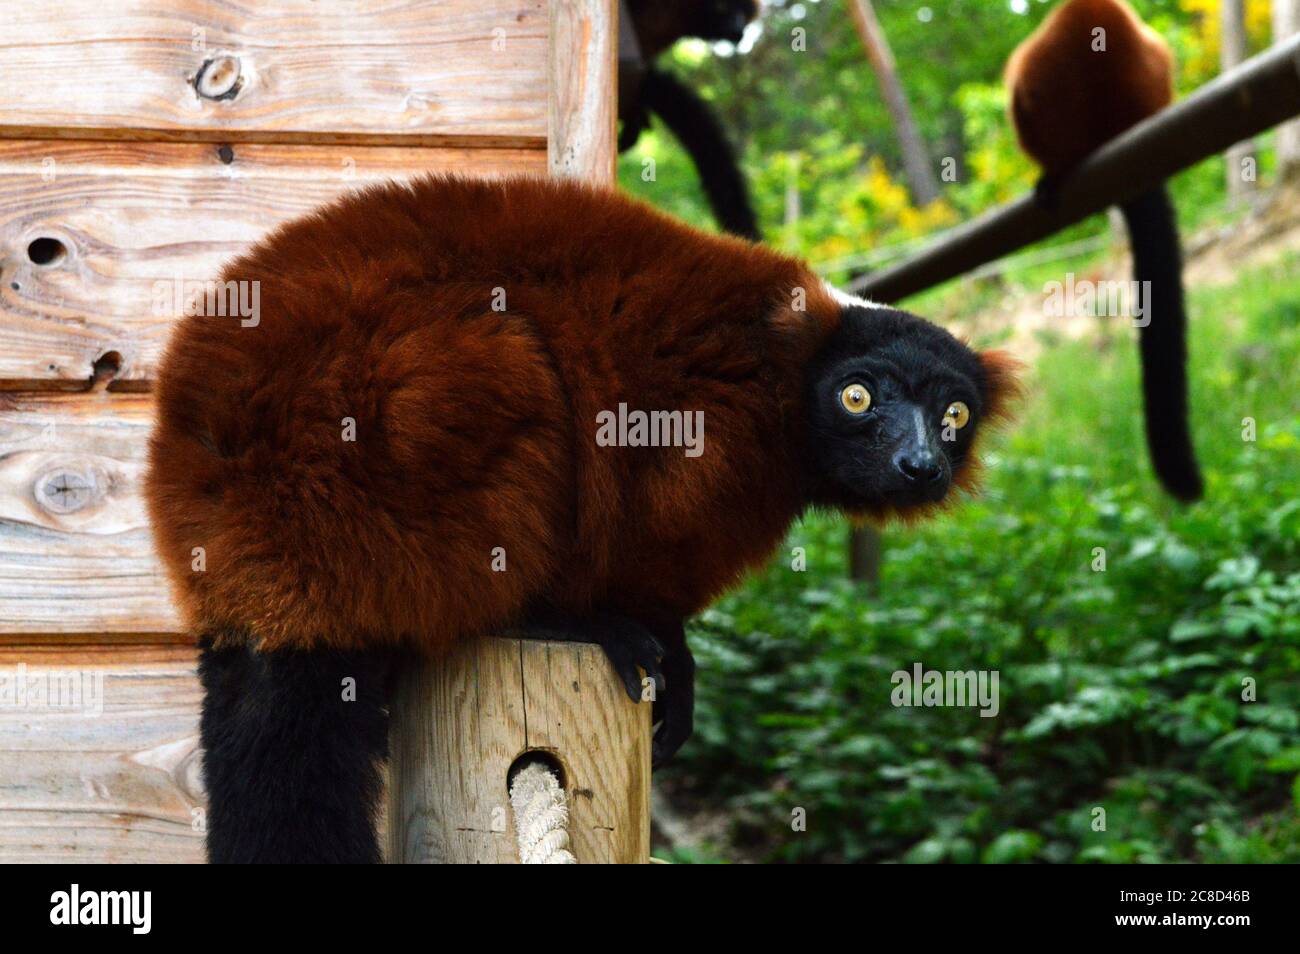 Magnífico lemur rojo con puño, es un mono tipo lemuridae. Esto es animal en peligro. Foto de stock